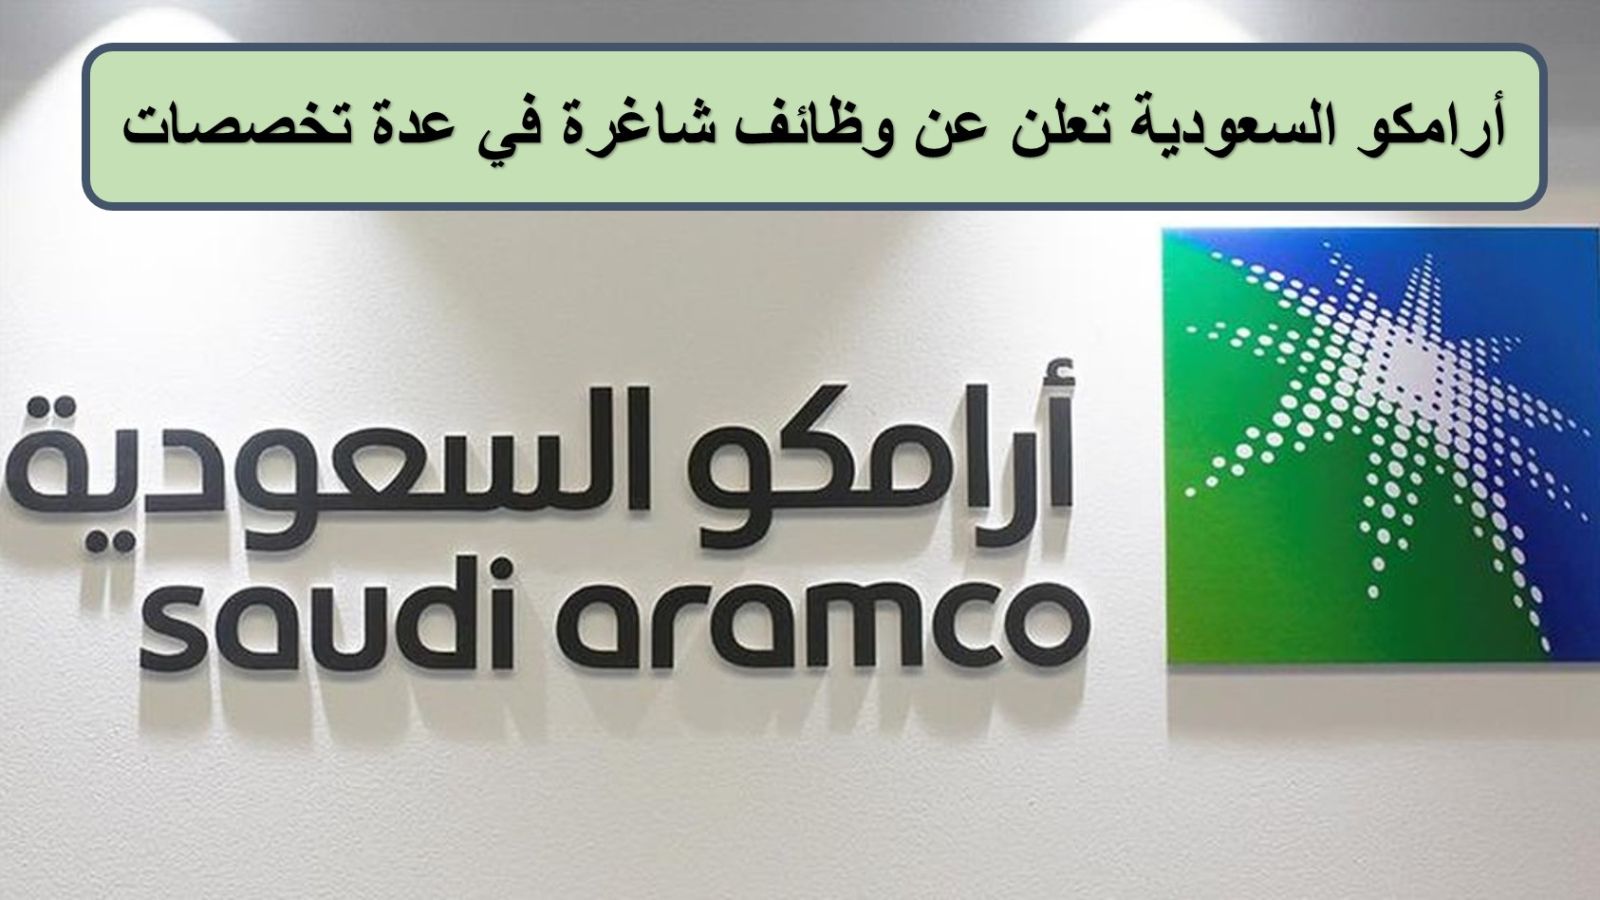 وظائف شركة أرامكو توتال بالسعودية 